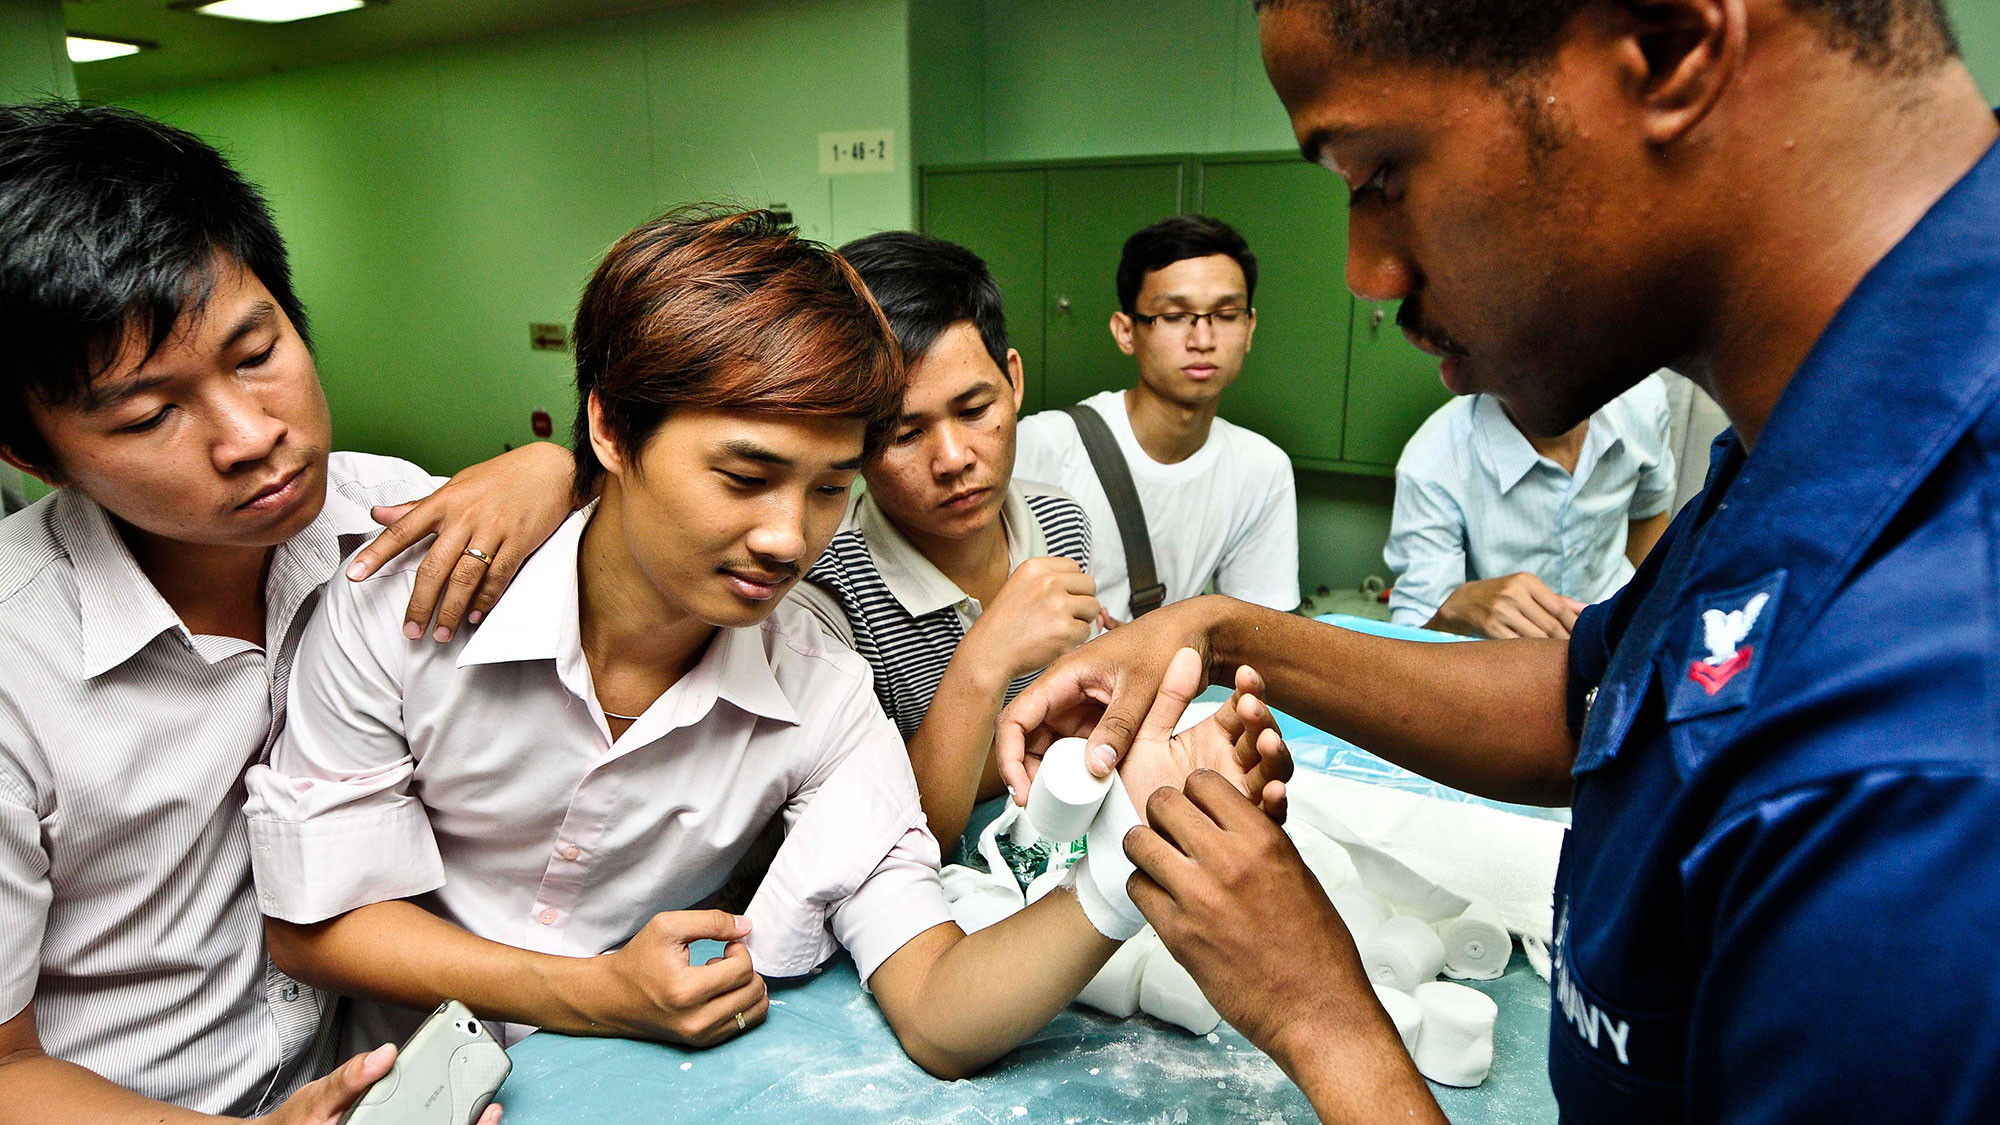 Наркотики в филиппинах скачать картинки на рабочий стол конопли